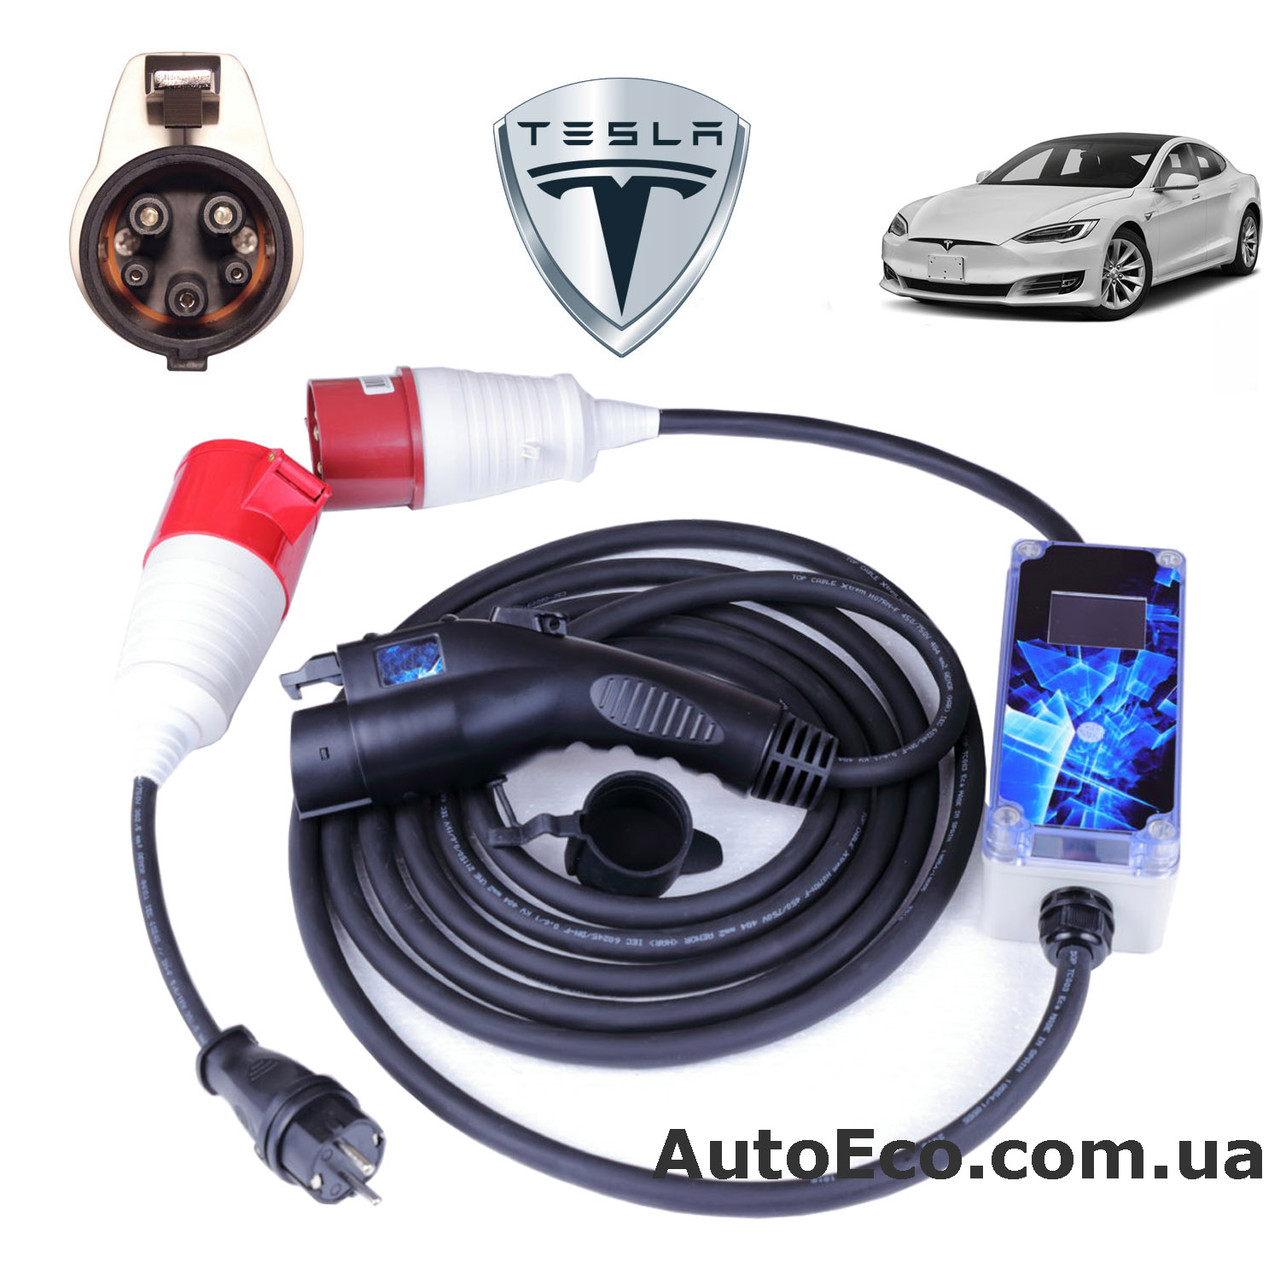 Зарядний пристрій для електромобіля Tesla Model S AutoEco J1772-32A-Wi-Fi